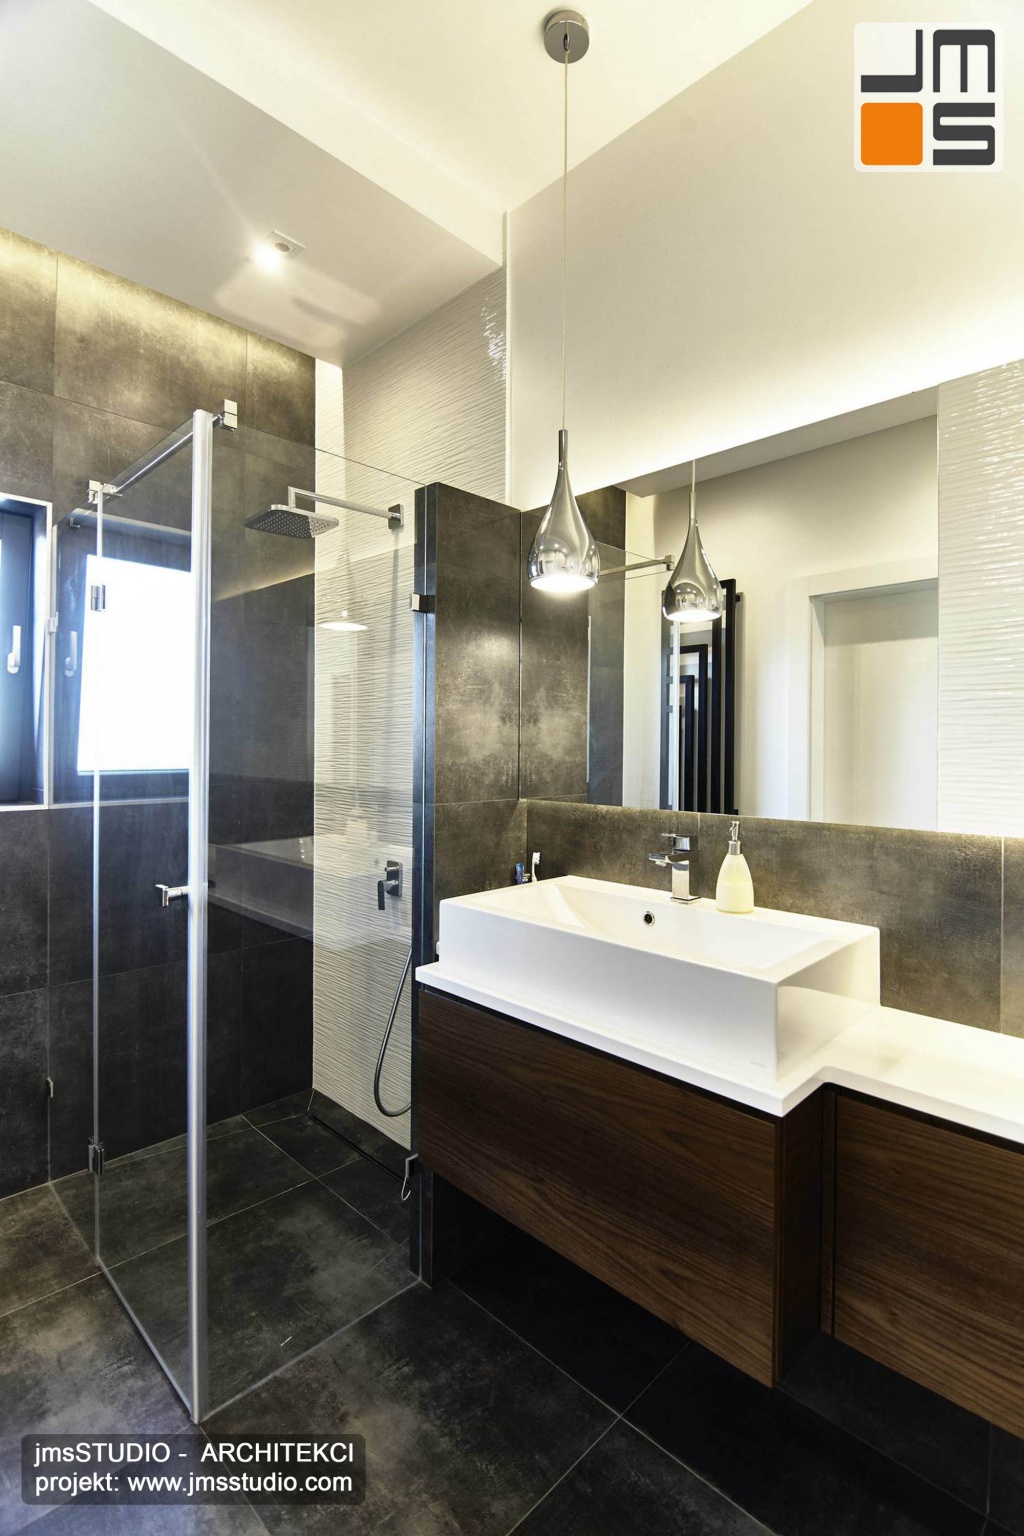 2018 06 bardzo elegancki i prosty projekt wnętrz łazienki pod Poznaniem zakładał zastosowanie ciemnych płytek gresowych oraz dużych luster i drewna w łazience